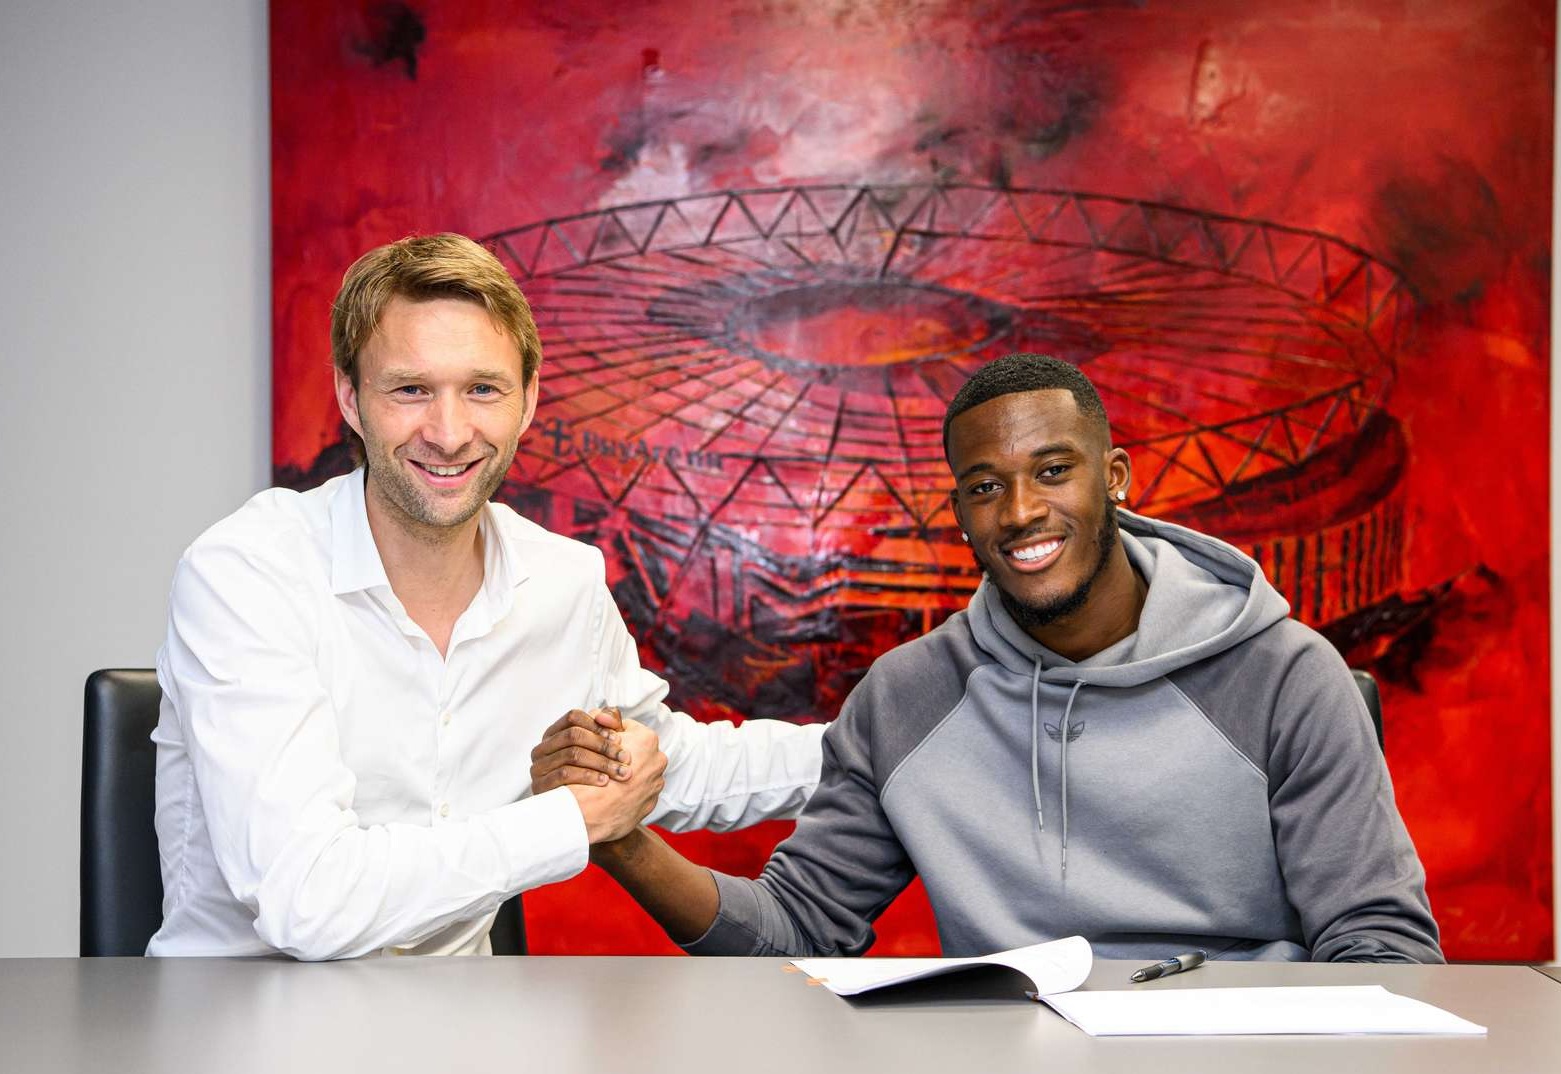 Hudson-Odoi to stay on loan at Leverkusen